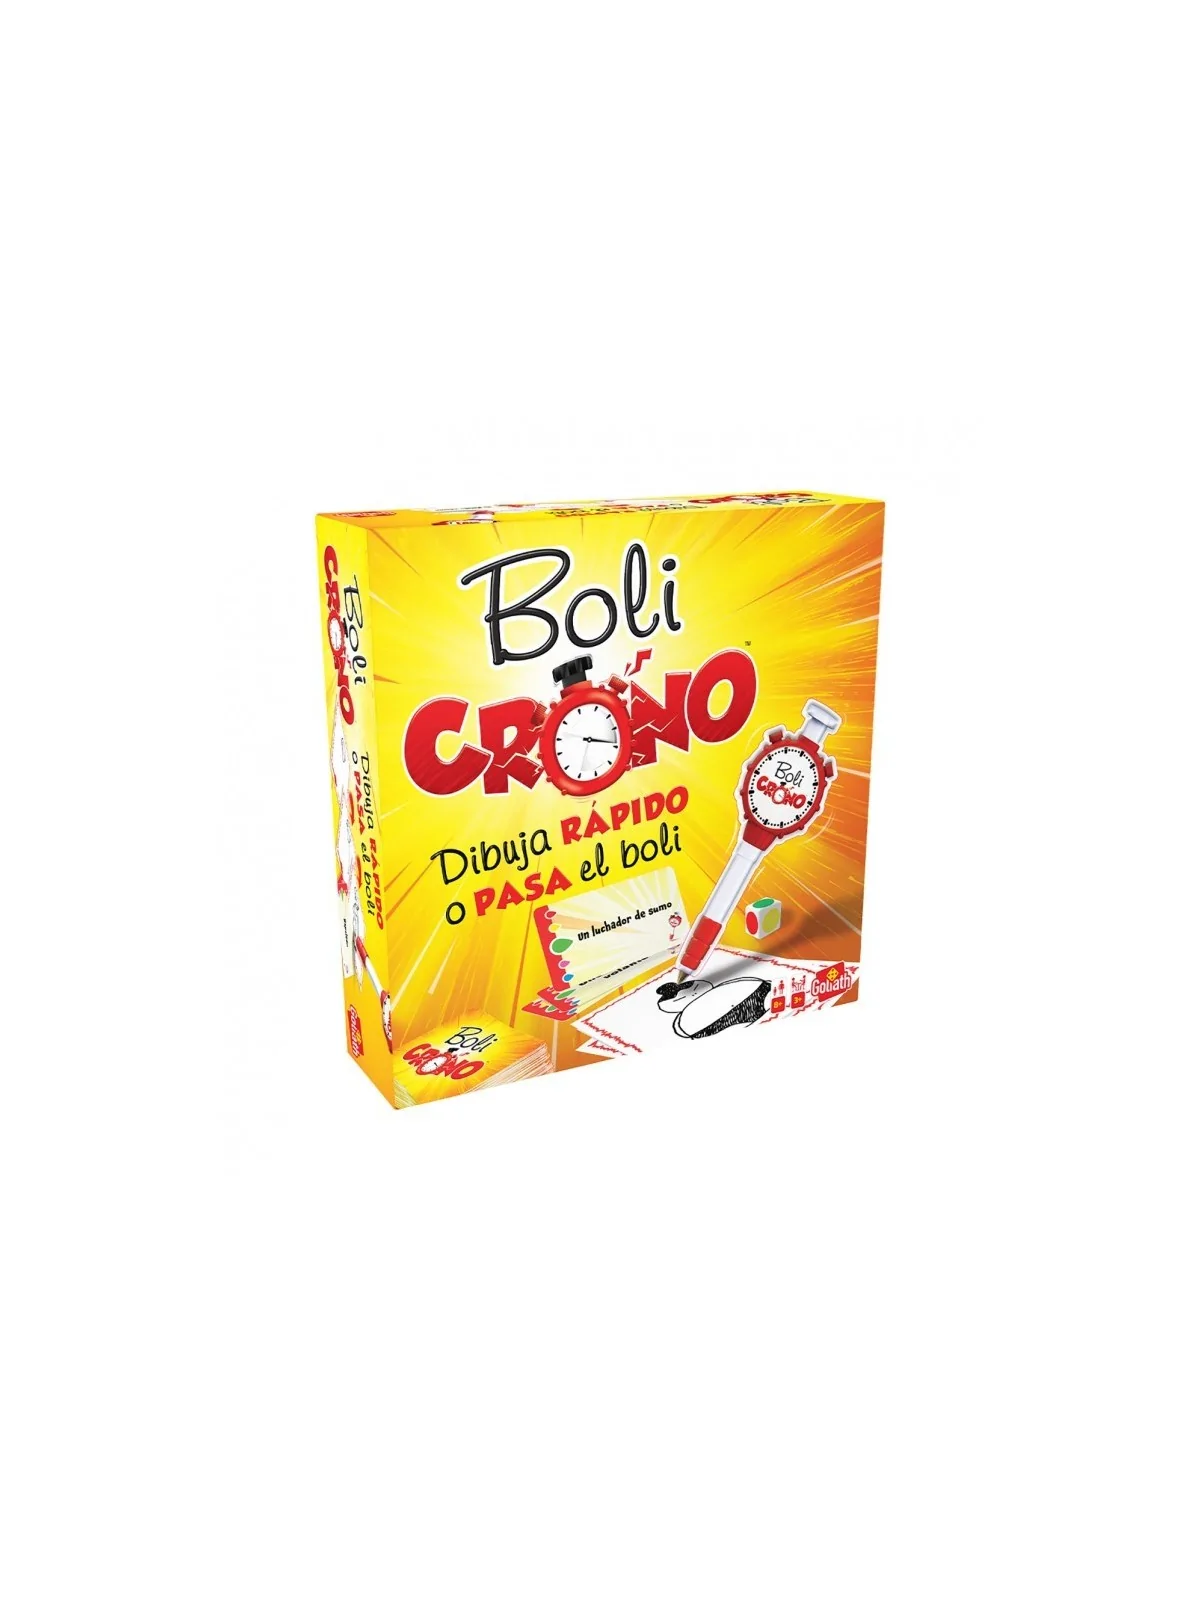 Comprar Boli Crono barato al mejor precio 25,49 € de Goliath bv